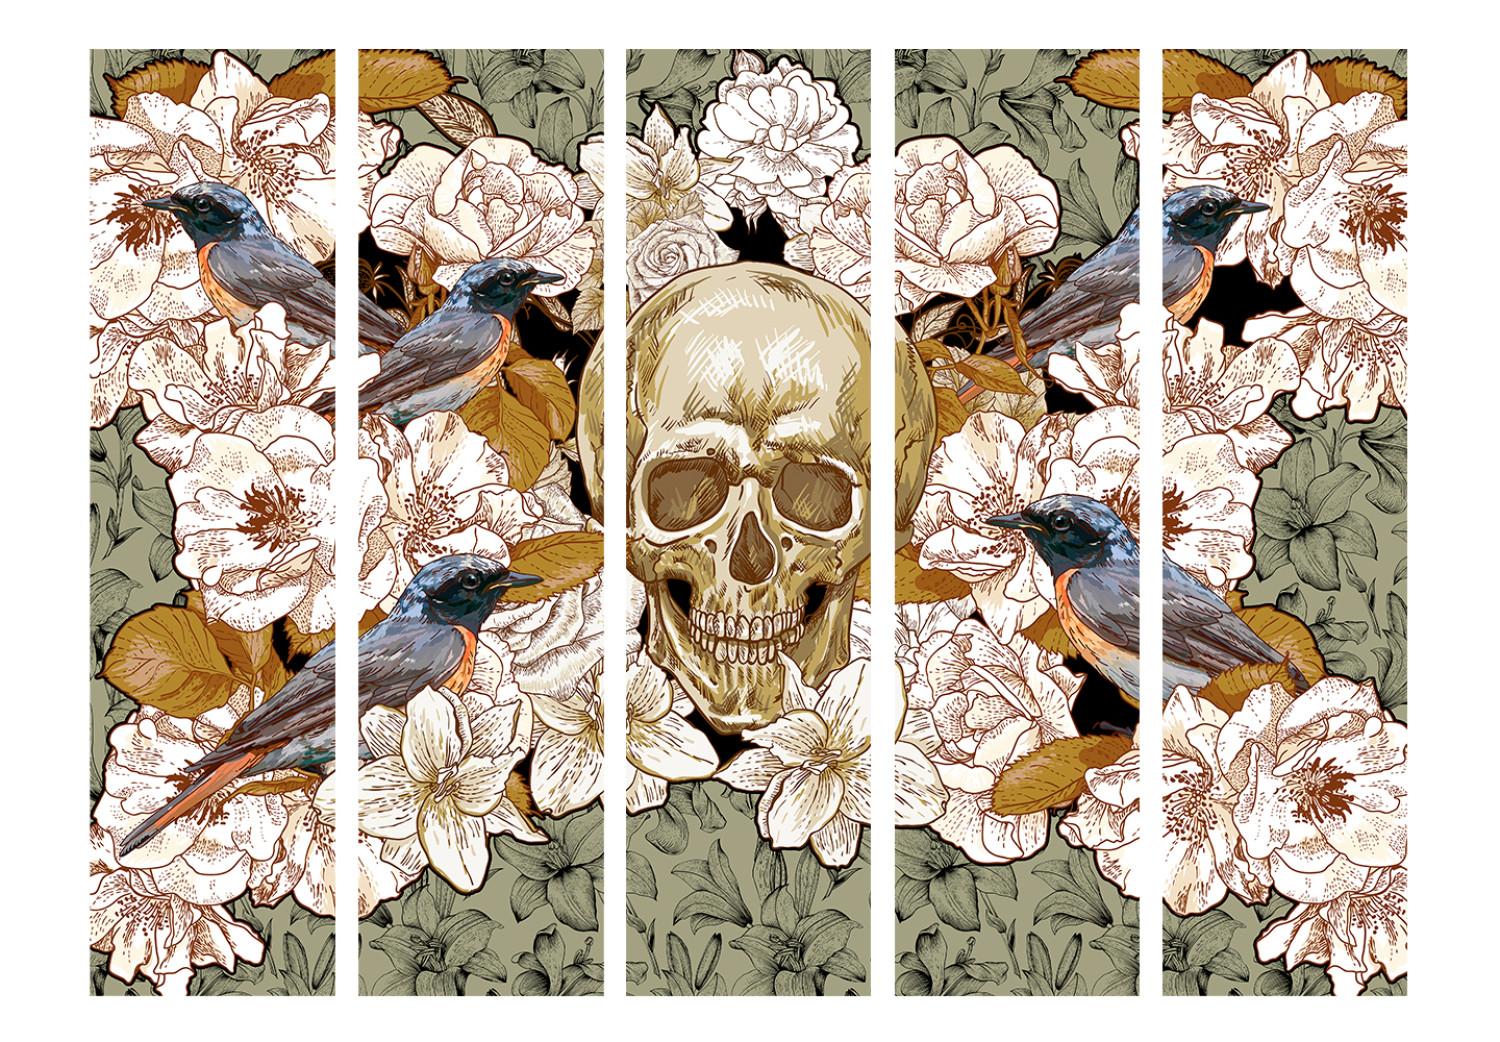 Biombo original Entre las flores II (5 piezas) - composición retro con calavera humana